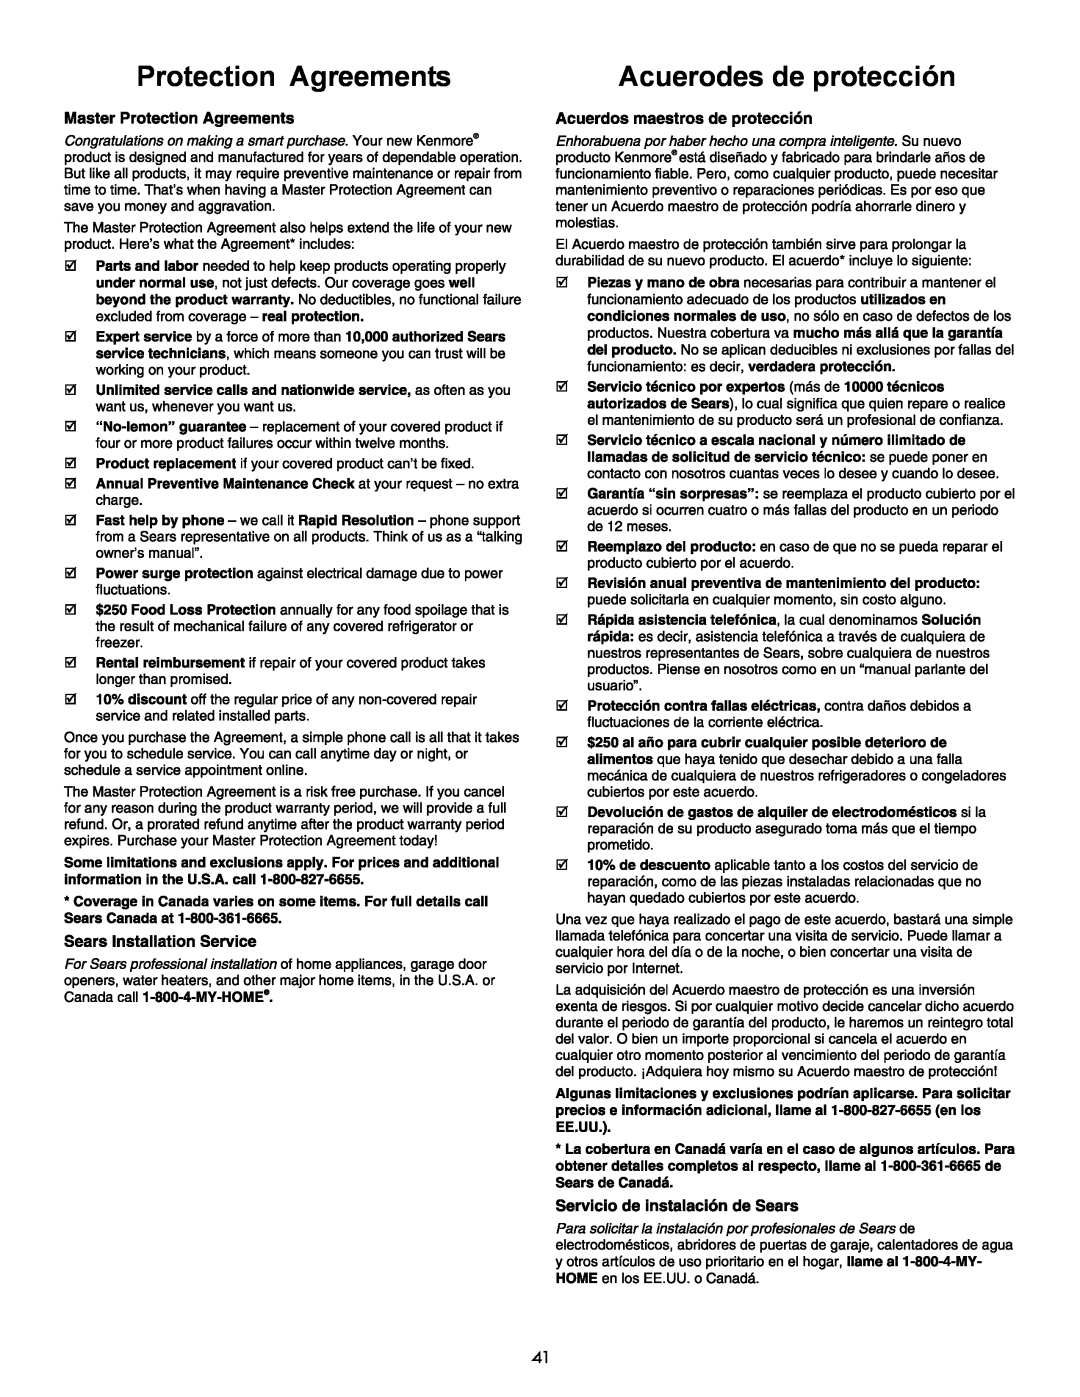 Kenmore 790 manual Protection Agreements, Acuerodes de protección 